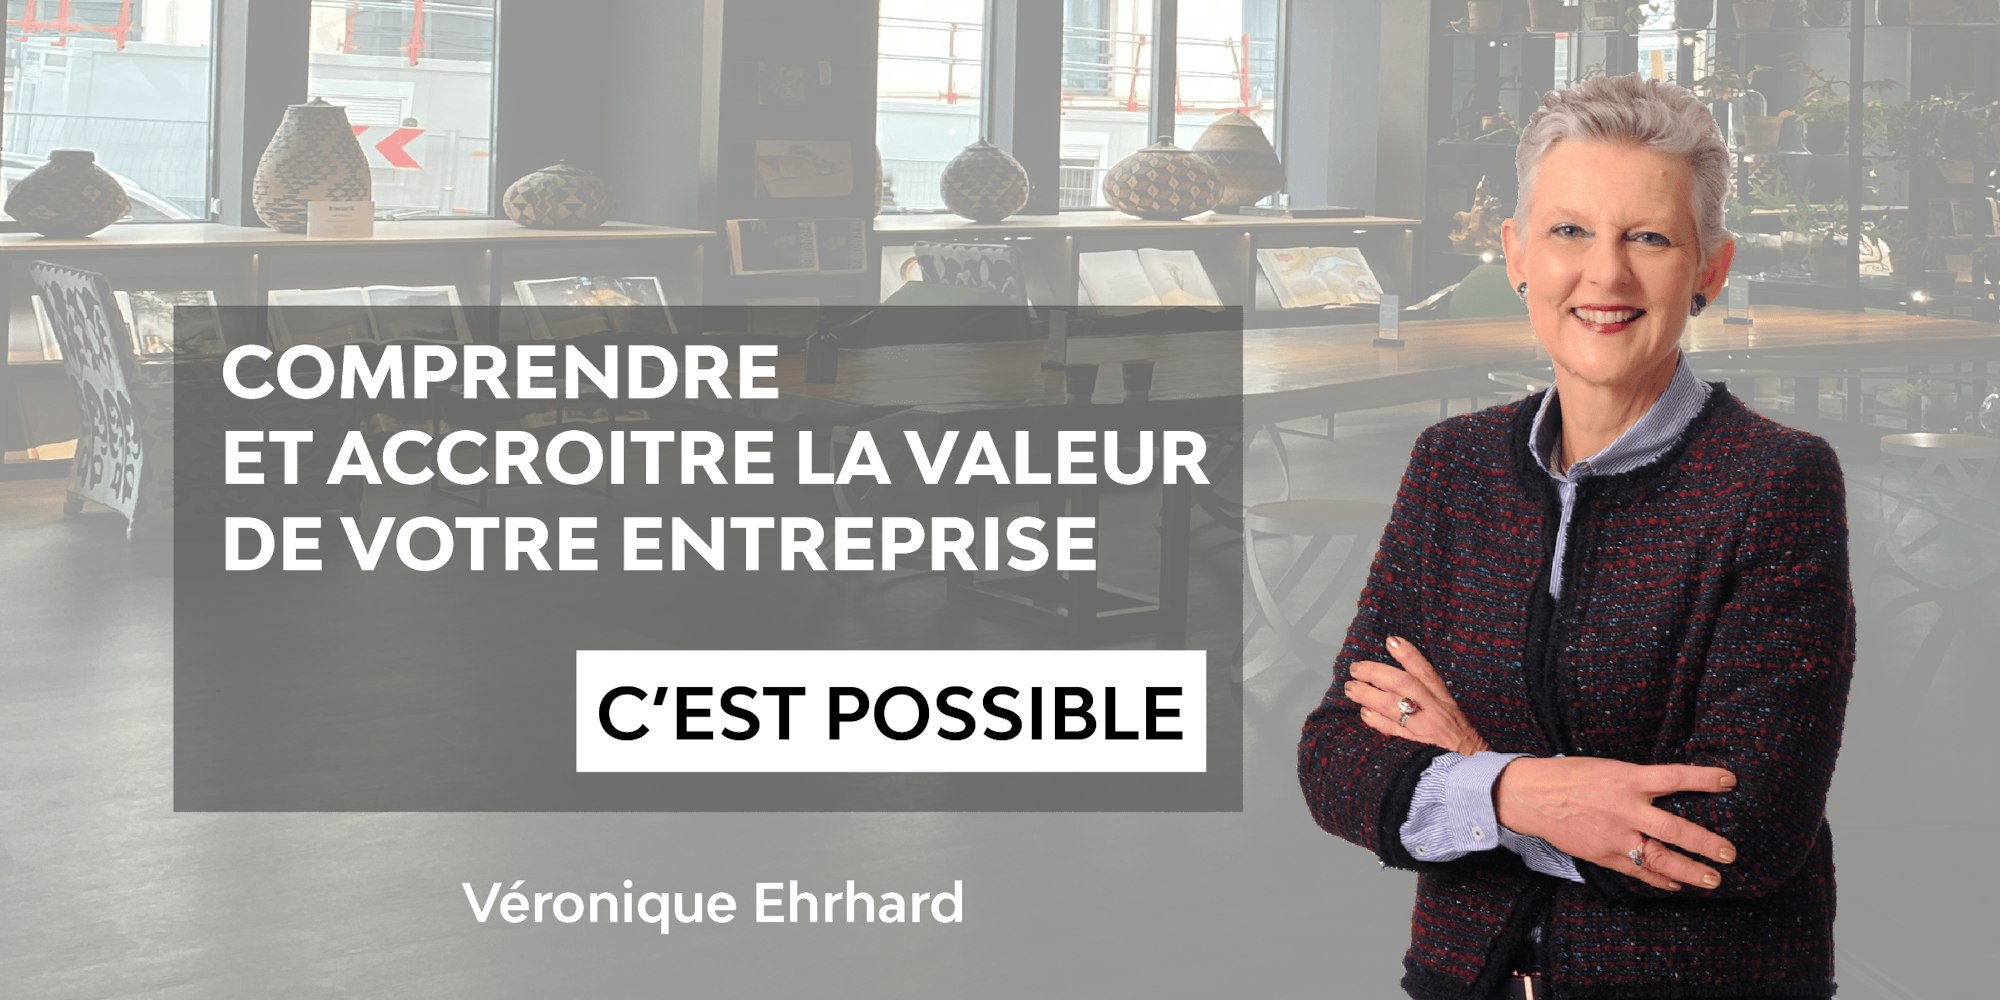 Comprendre et accroitre la valeur de votre entreprise c'est possible par Véronique Ehrhard